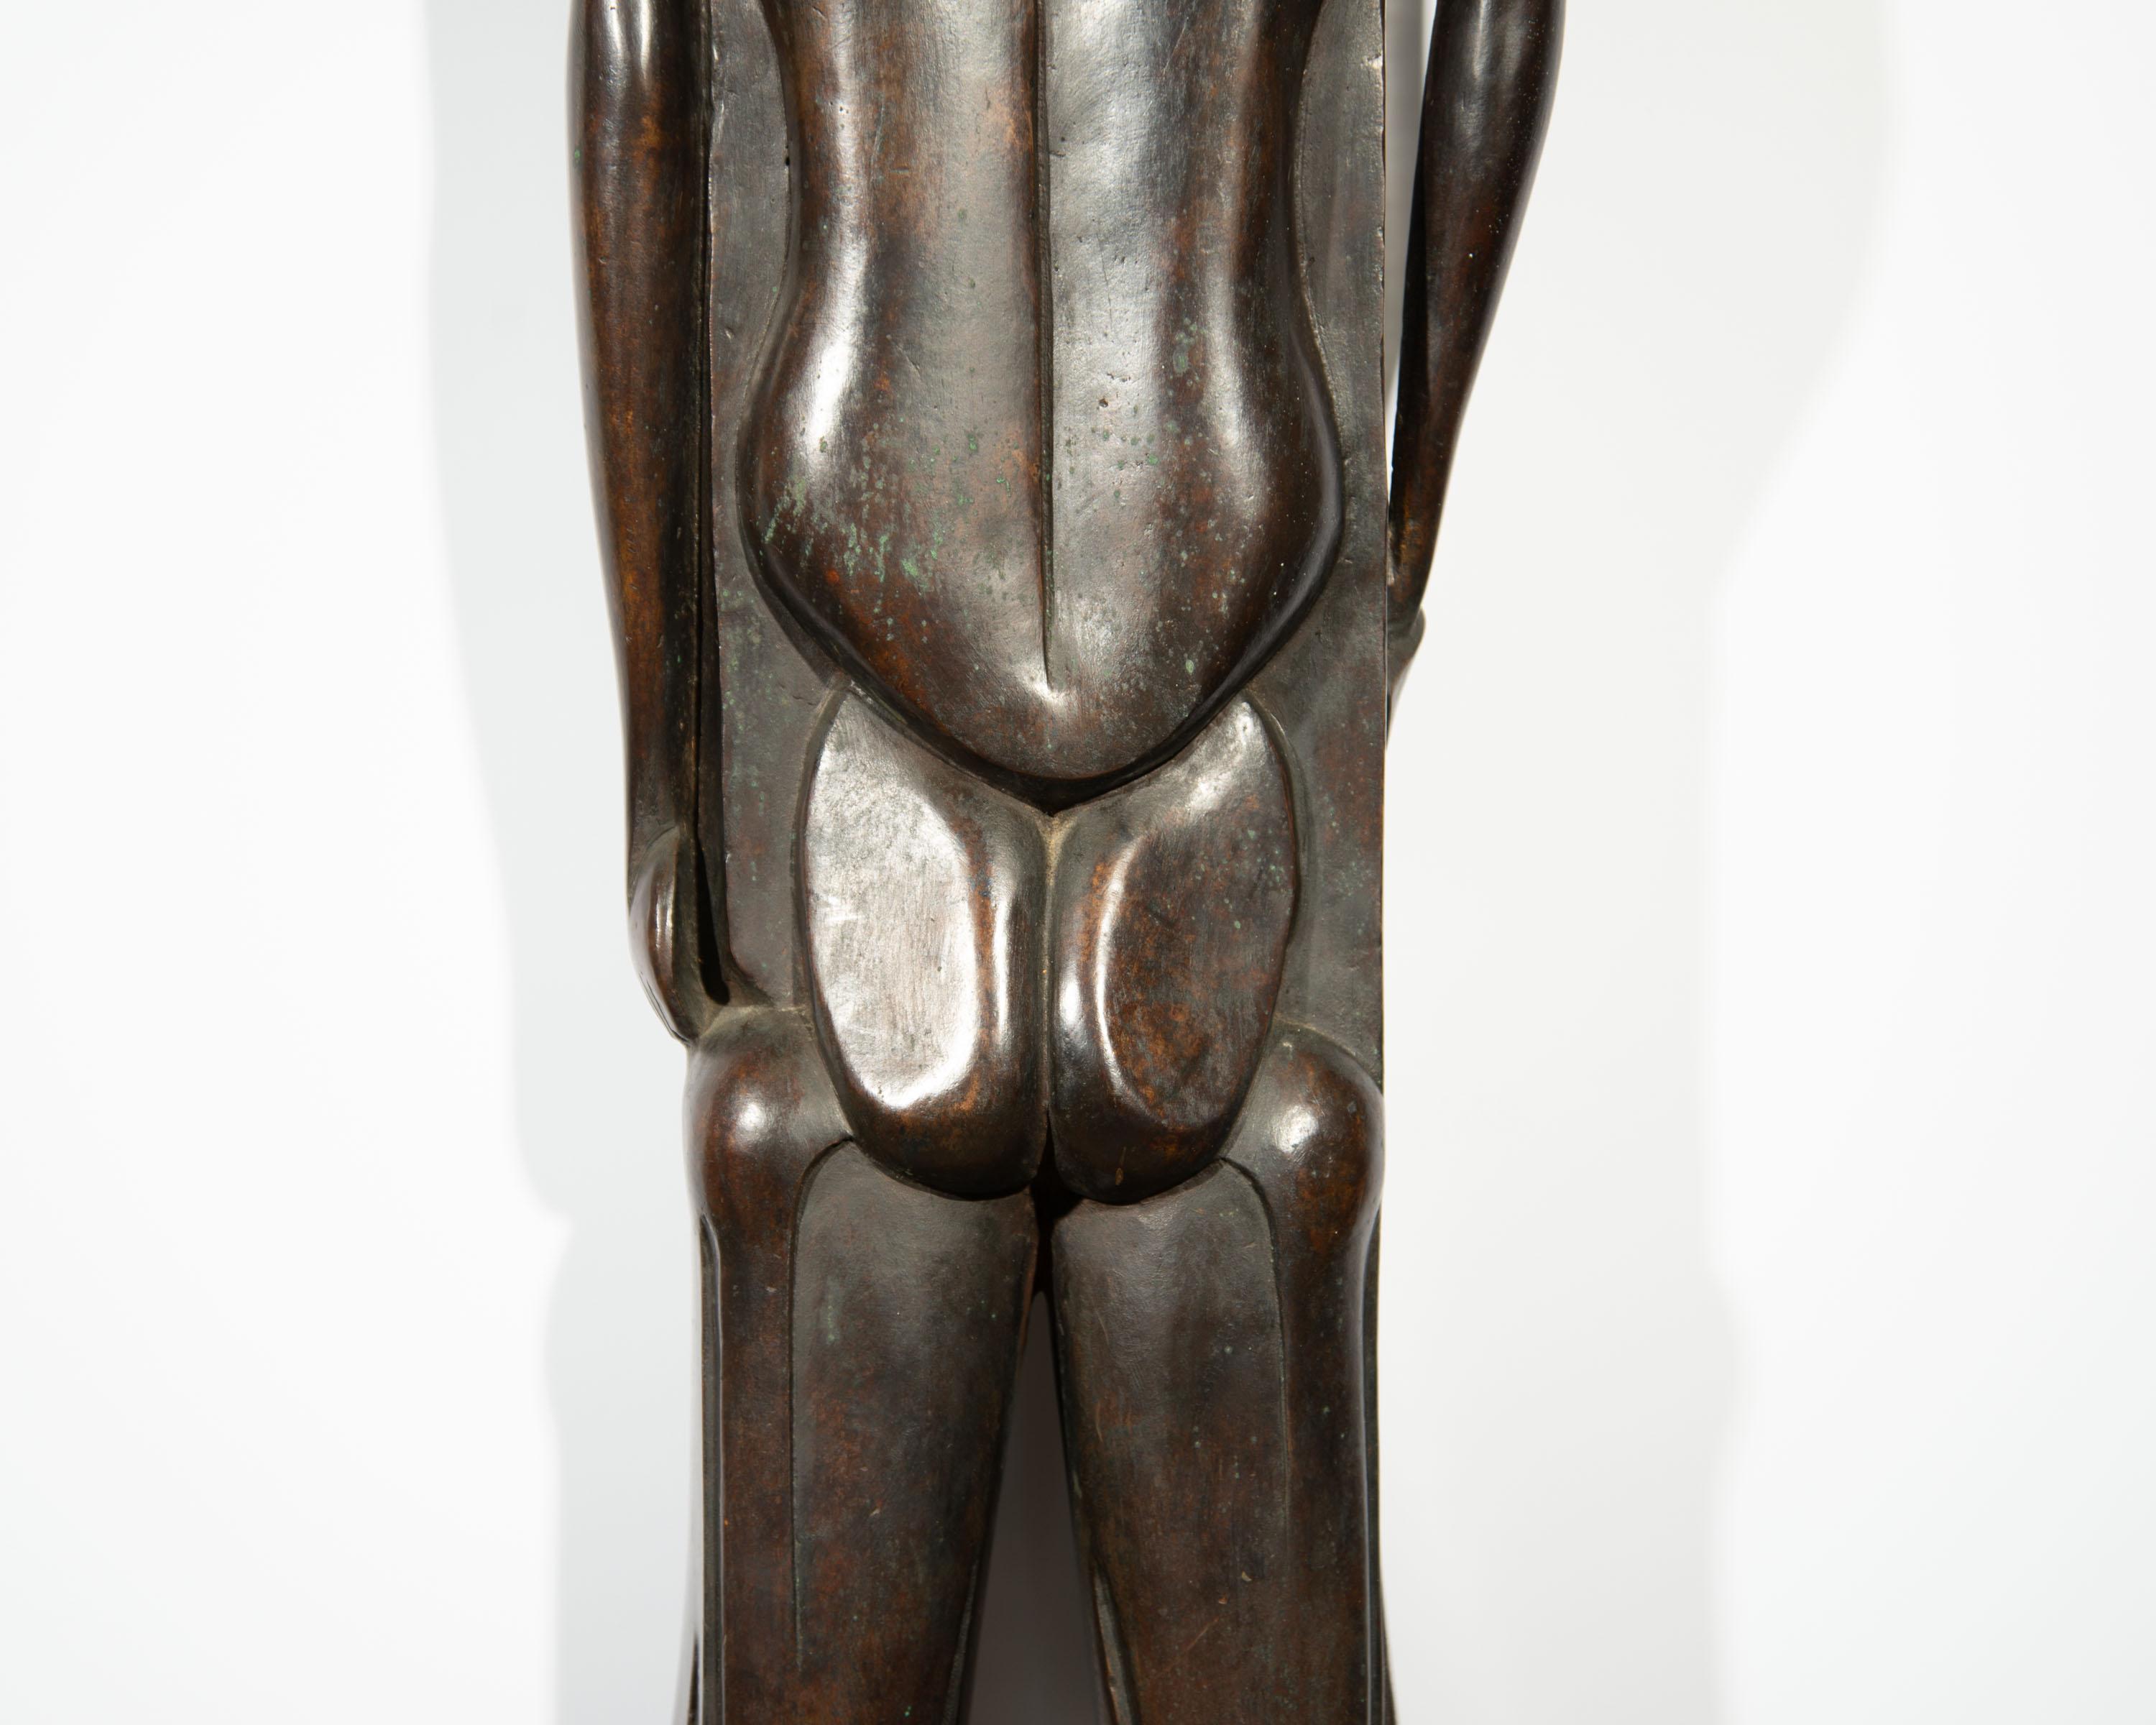 Isidore Grossman Signed 1955 “Fegele” Bronze Sculpture of a Figure For Sale 5